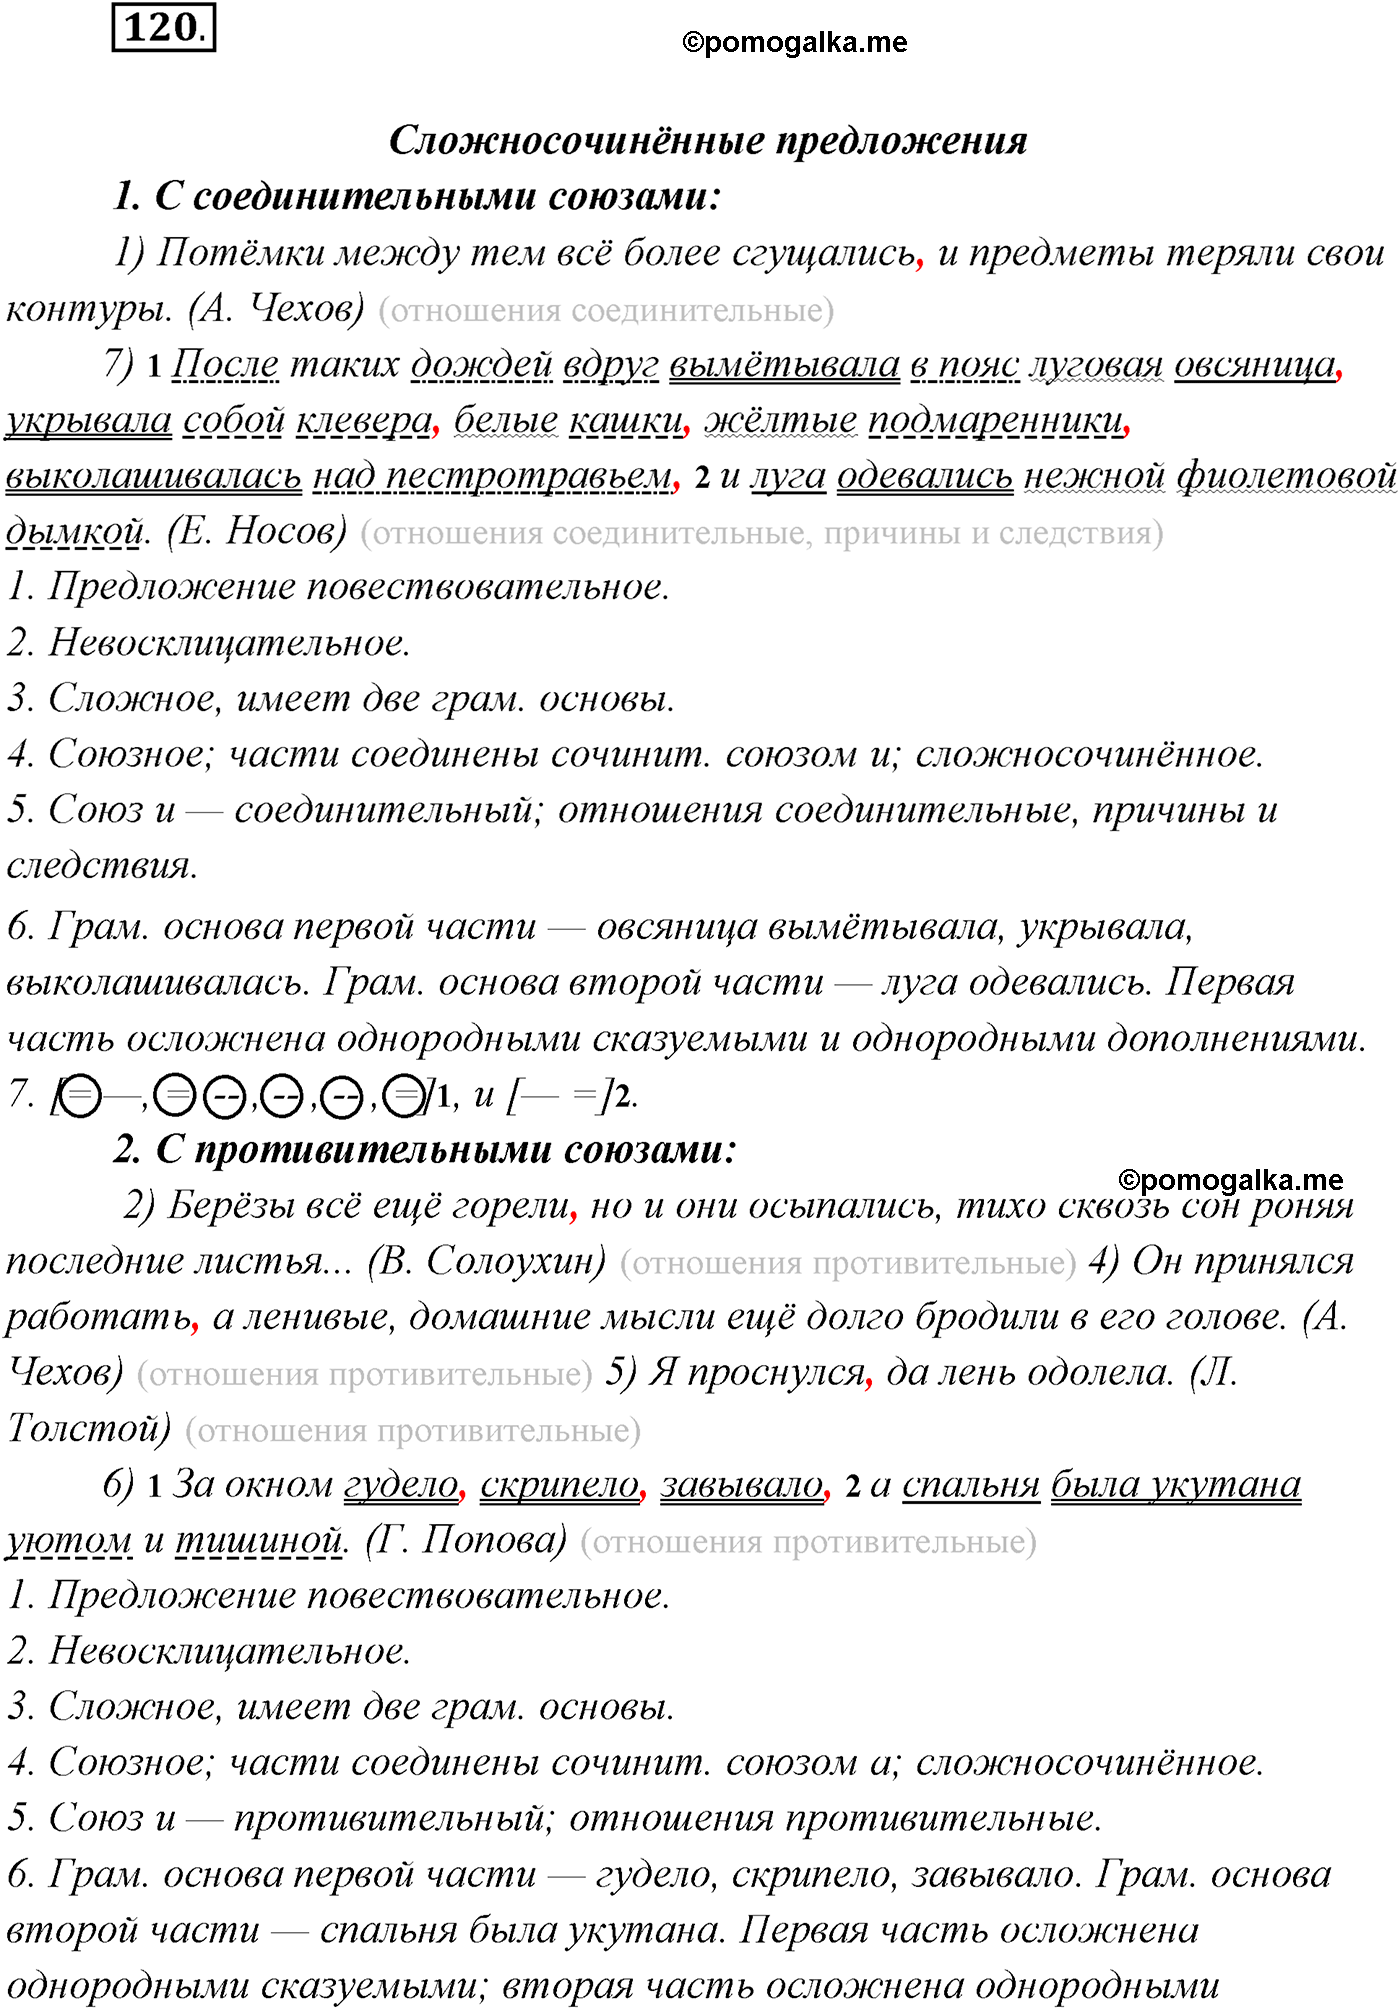 упражнение №120 русский язык 9 класс Рыбченкова, Александрова